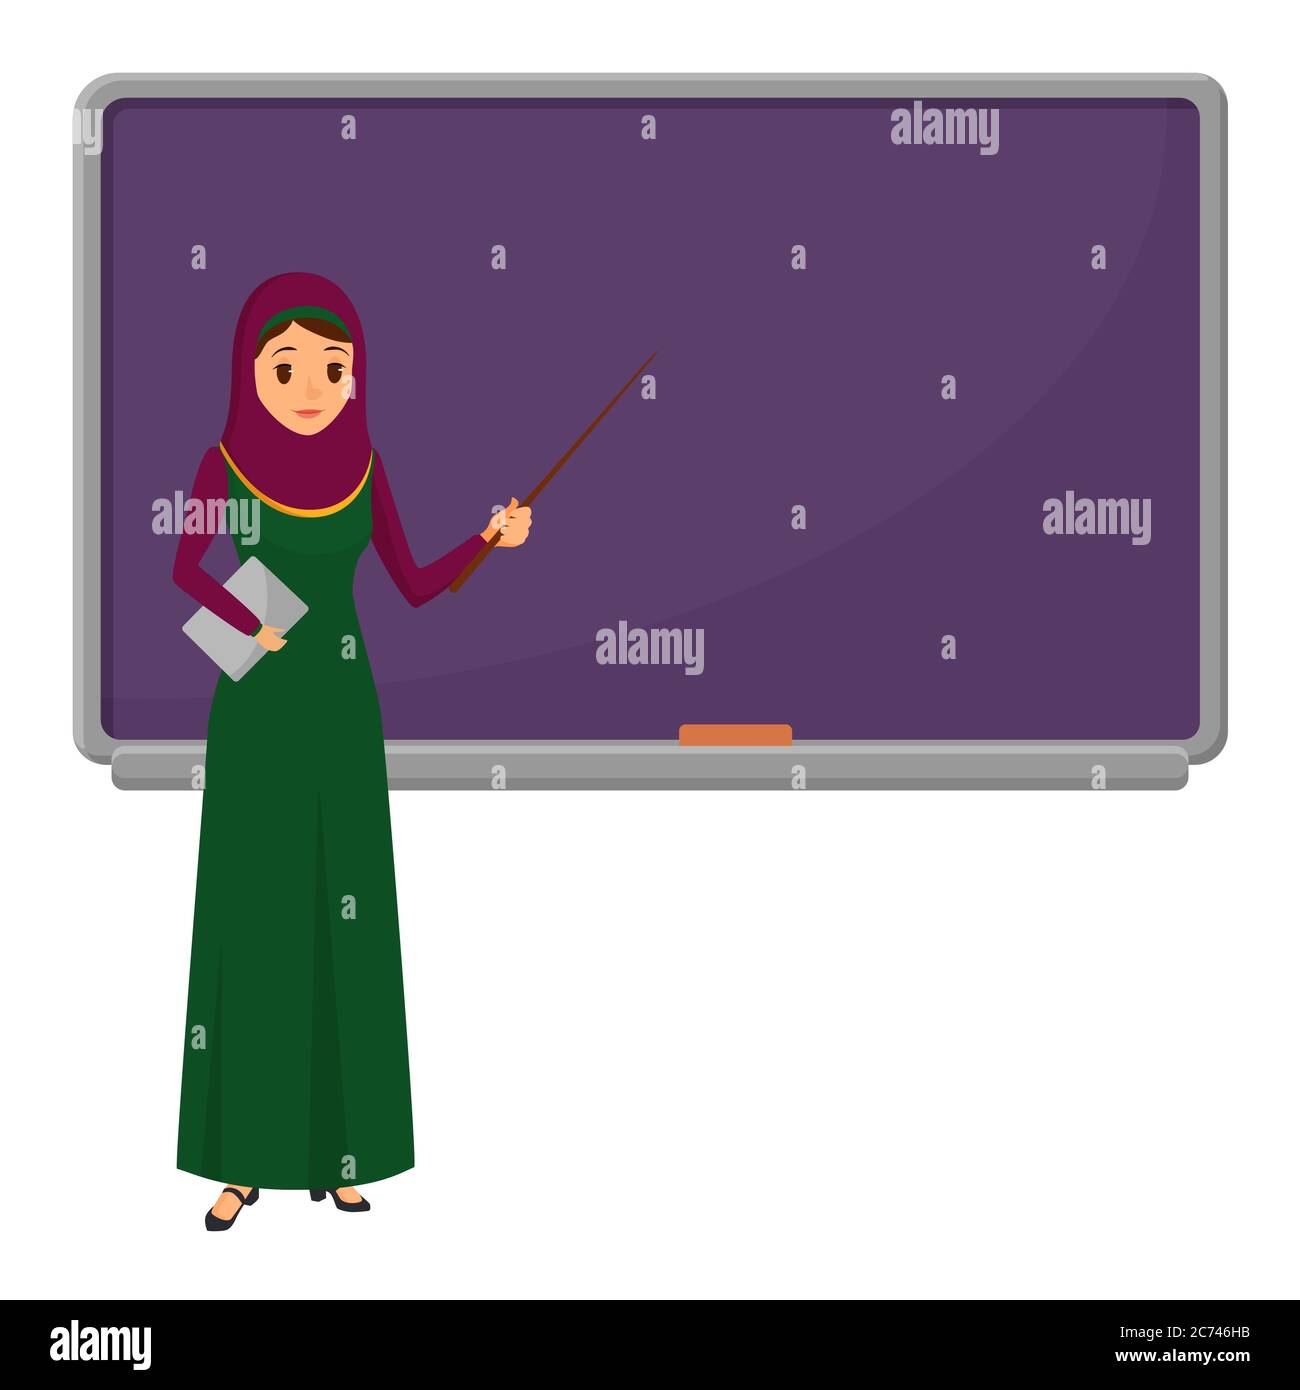 Muslimische Lehrerin, die vor der Tafel steht und in der Schule, Hochschule oder Universität unterrichtet. Flaches Design muslimische weibliche Charakter in traditioneller Kleidung Stock Vektor